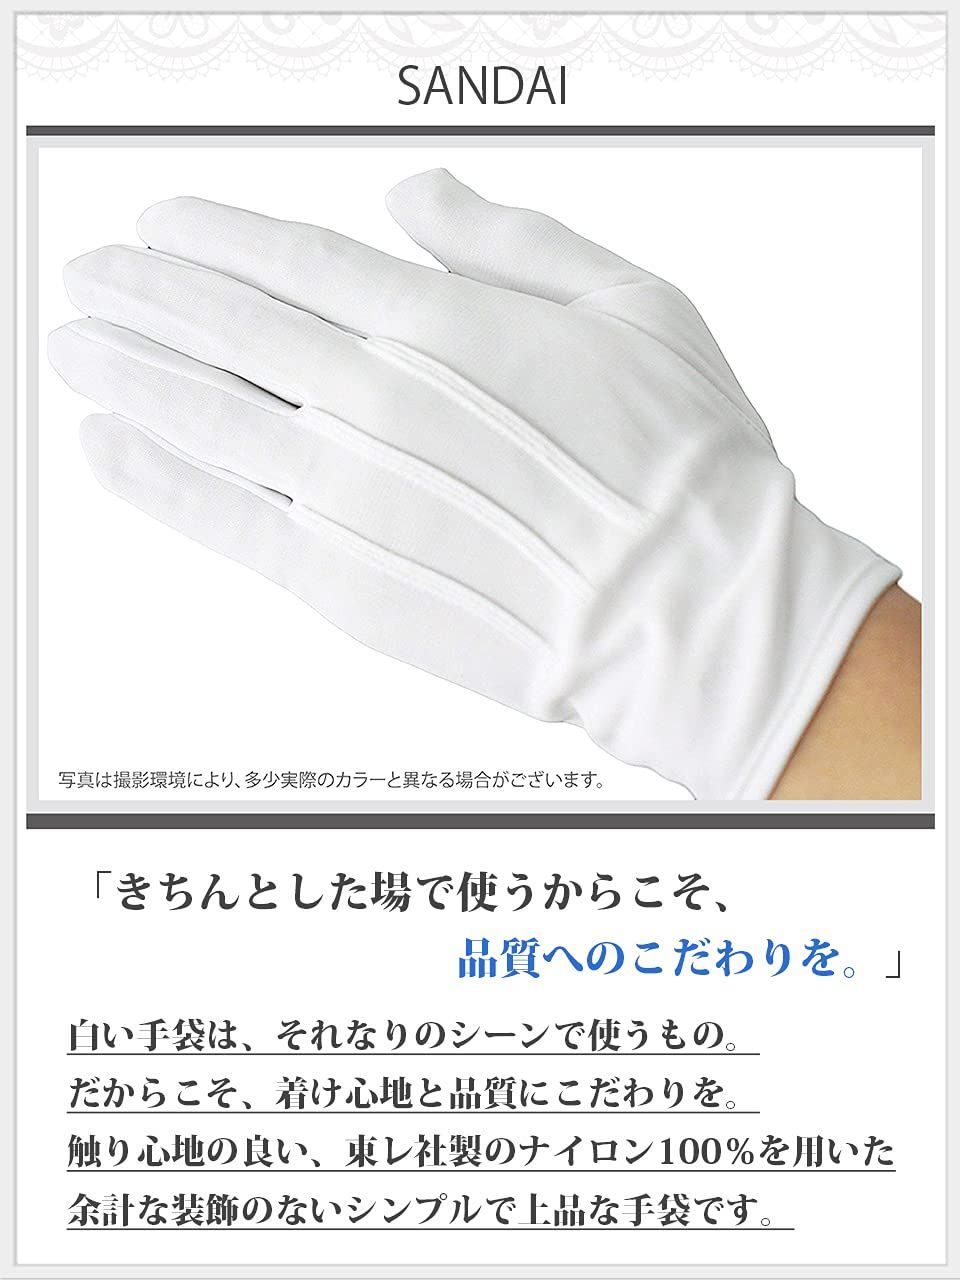 SANDAI 礼装 用 フォーマル メンズ 白 手袋 ホック付き S ～ 3L 東レ 社製 ナイロン 使用 グローブ 1双 2双 3双 4双 5双 10 双セット から 選択可 シンセイジンショップ メルカリ